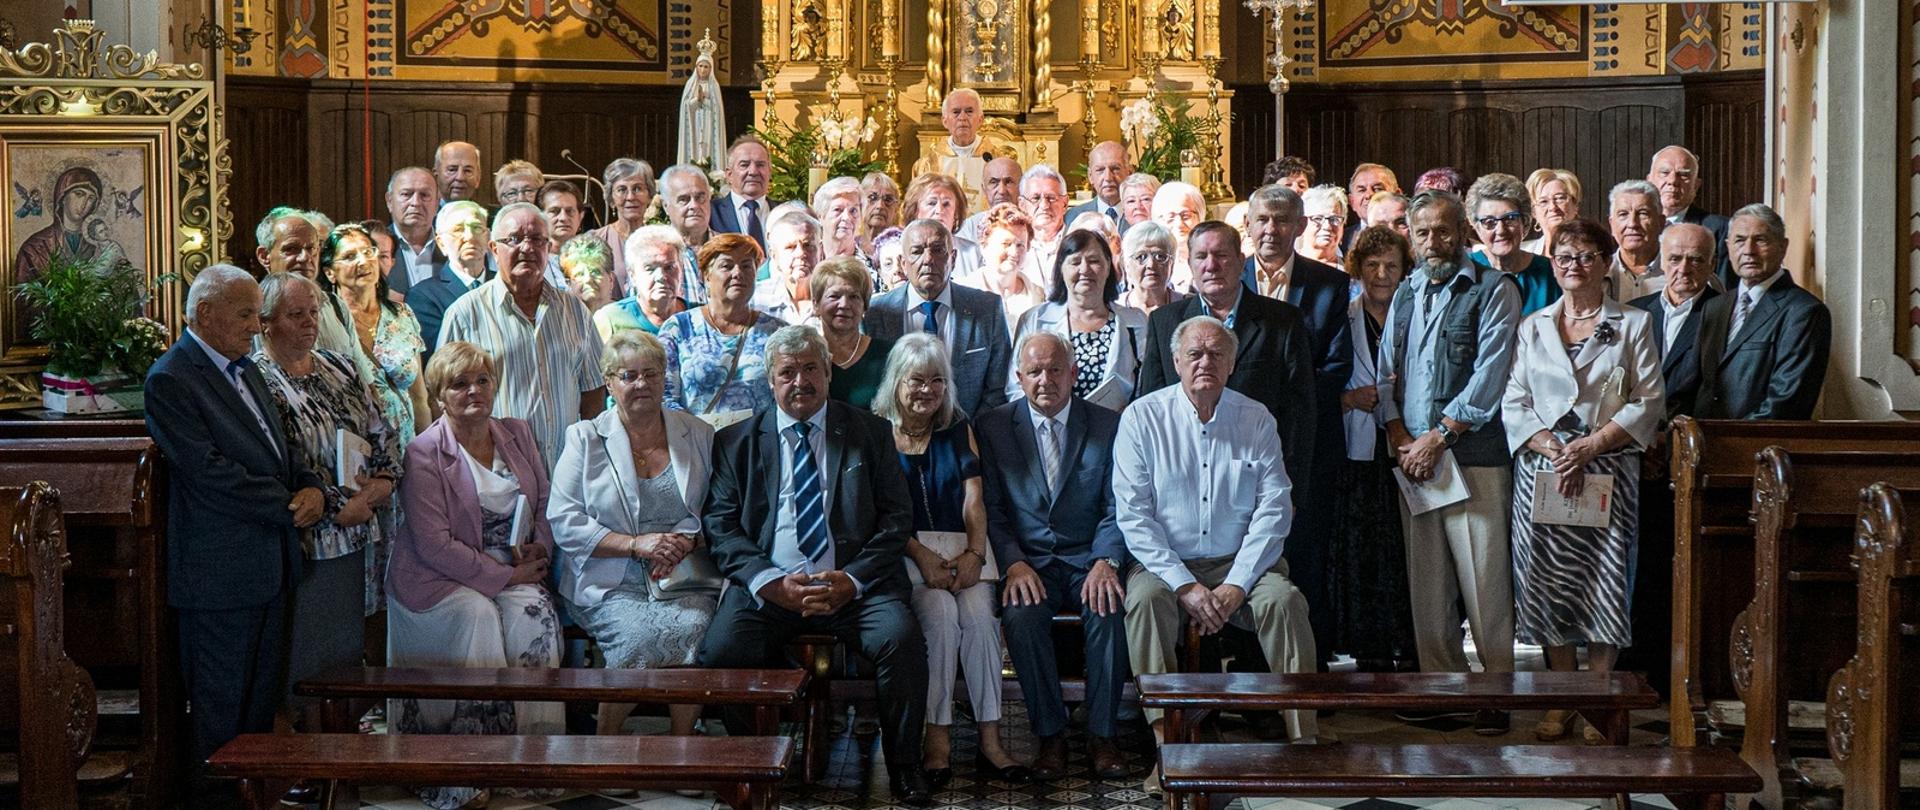 Fotografia grupowa wykonana w kościele przed ołtarzem, przedstawiająca uczestników uroczystości jubileusz 50-lecia pożycia małżeńskiego